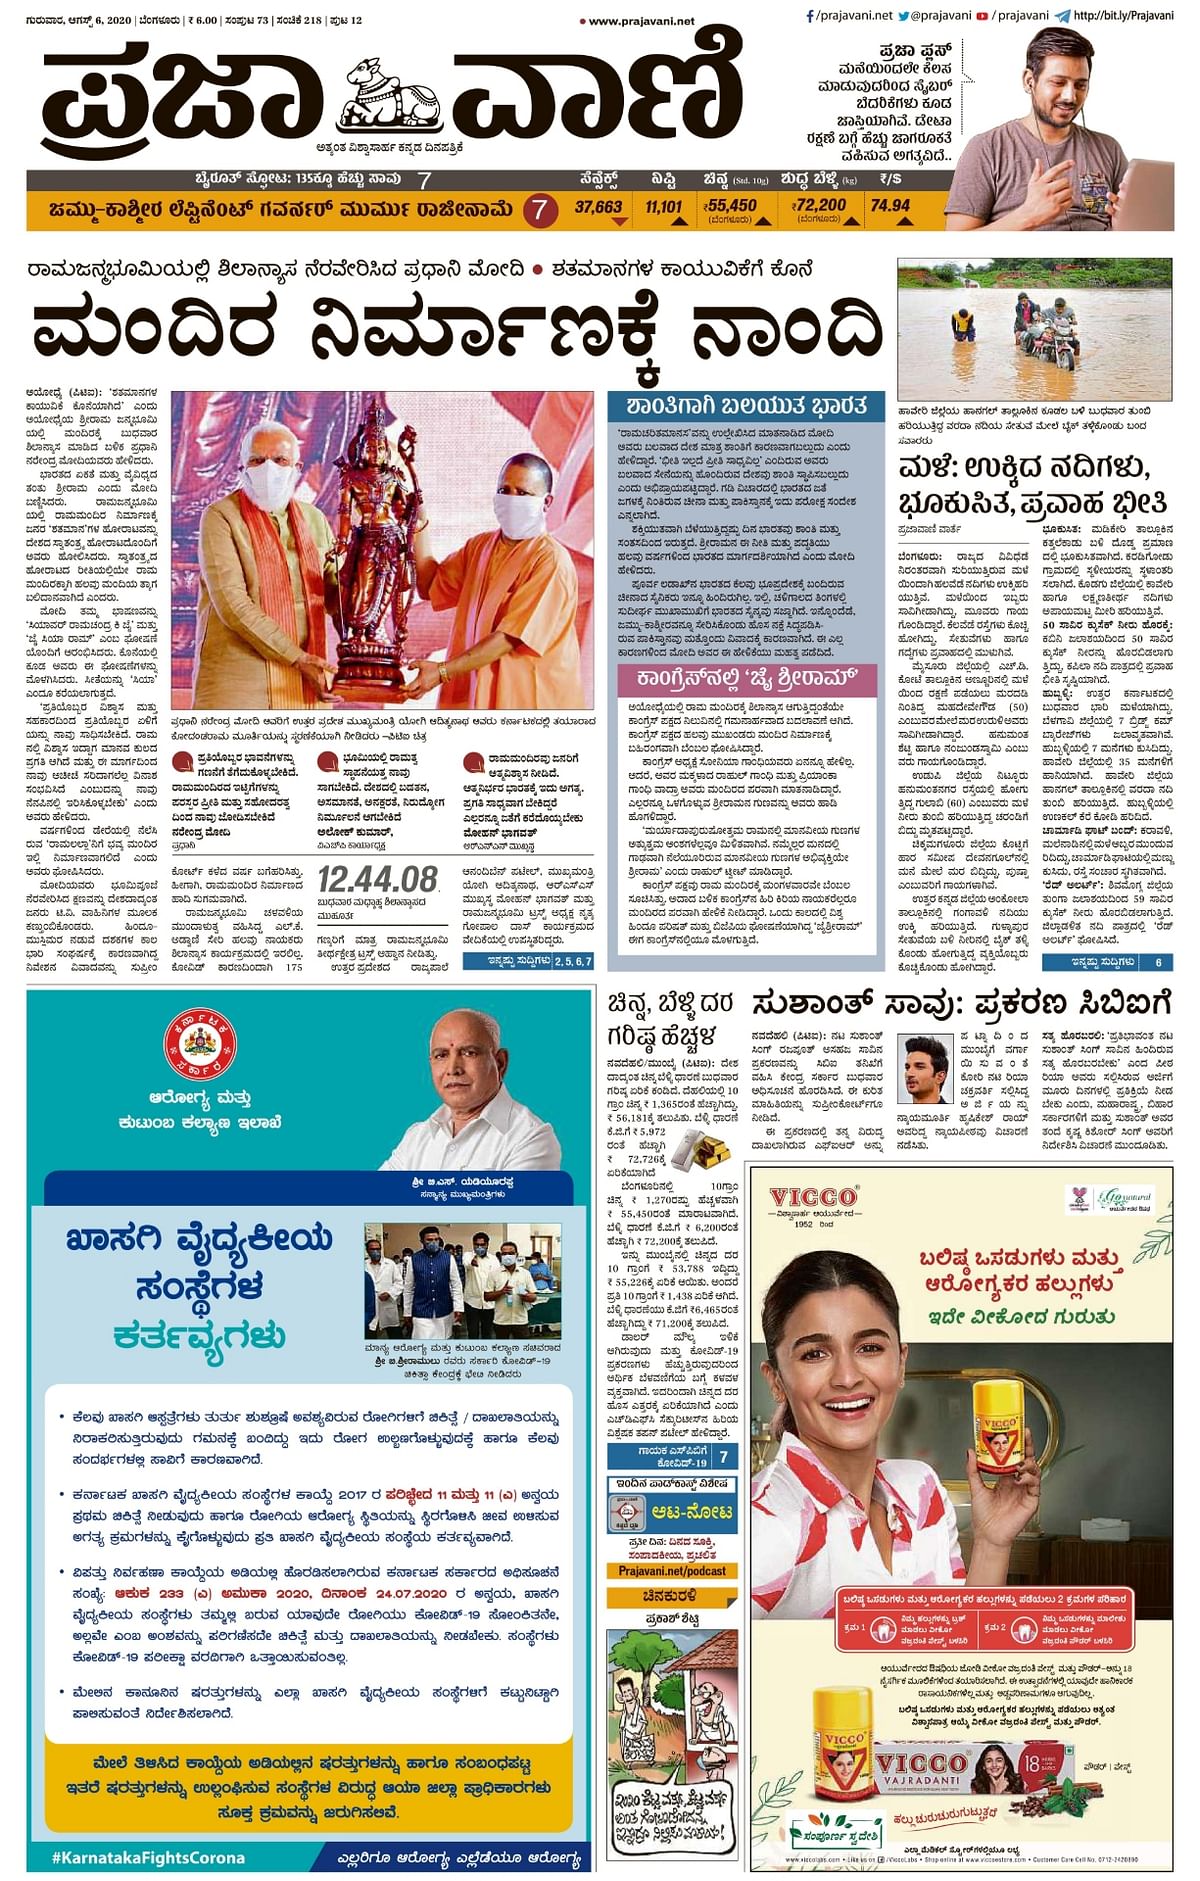 Kannada newspaper Prajavani says,